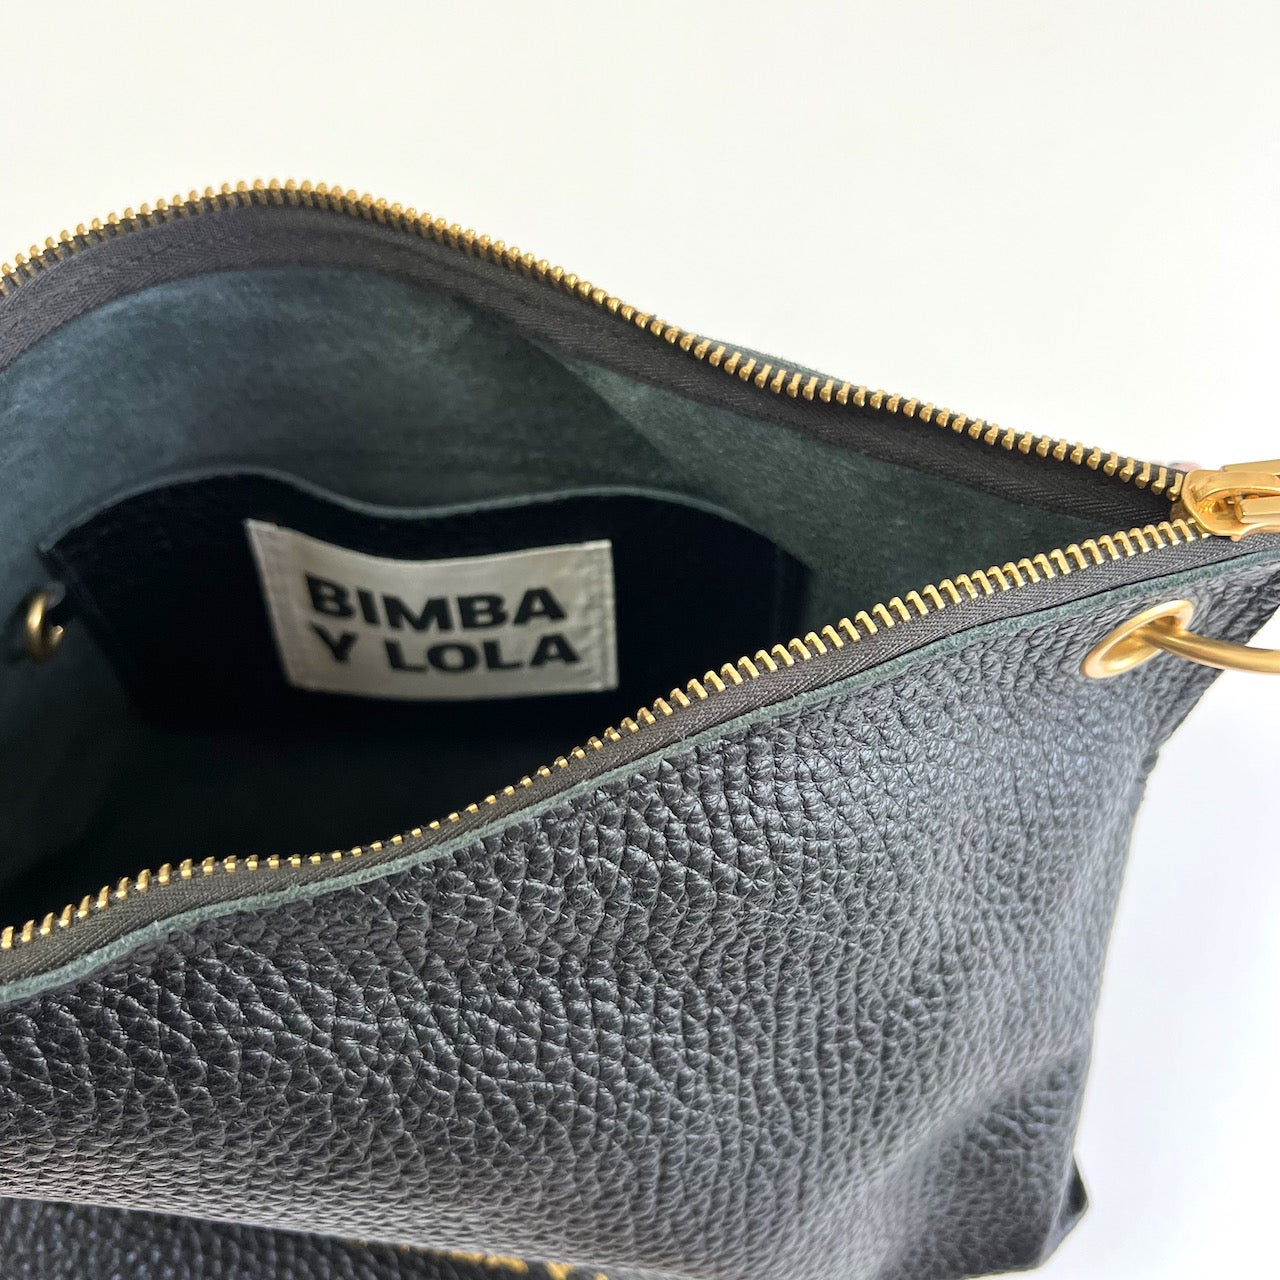 Handbag Bimba y Lola Black in Suede - 34441564